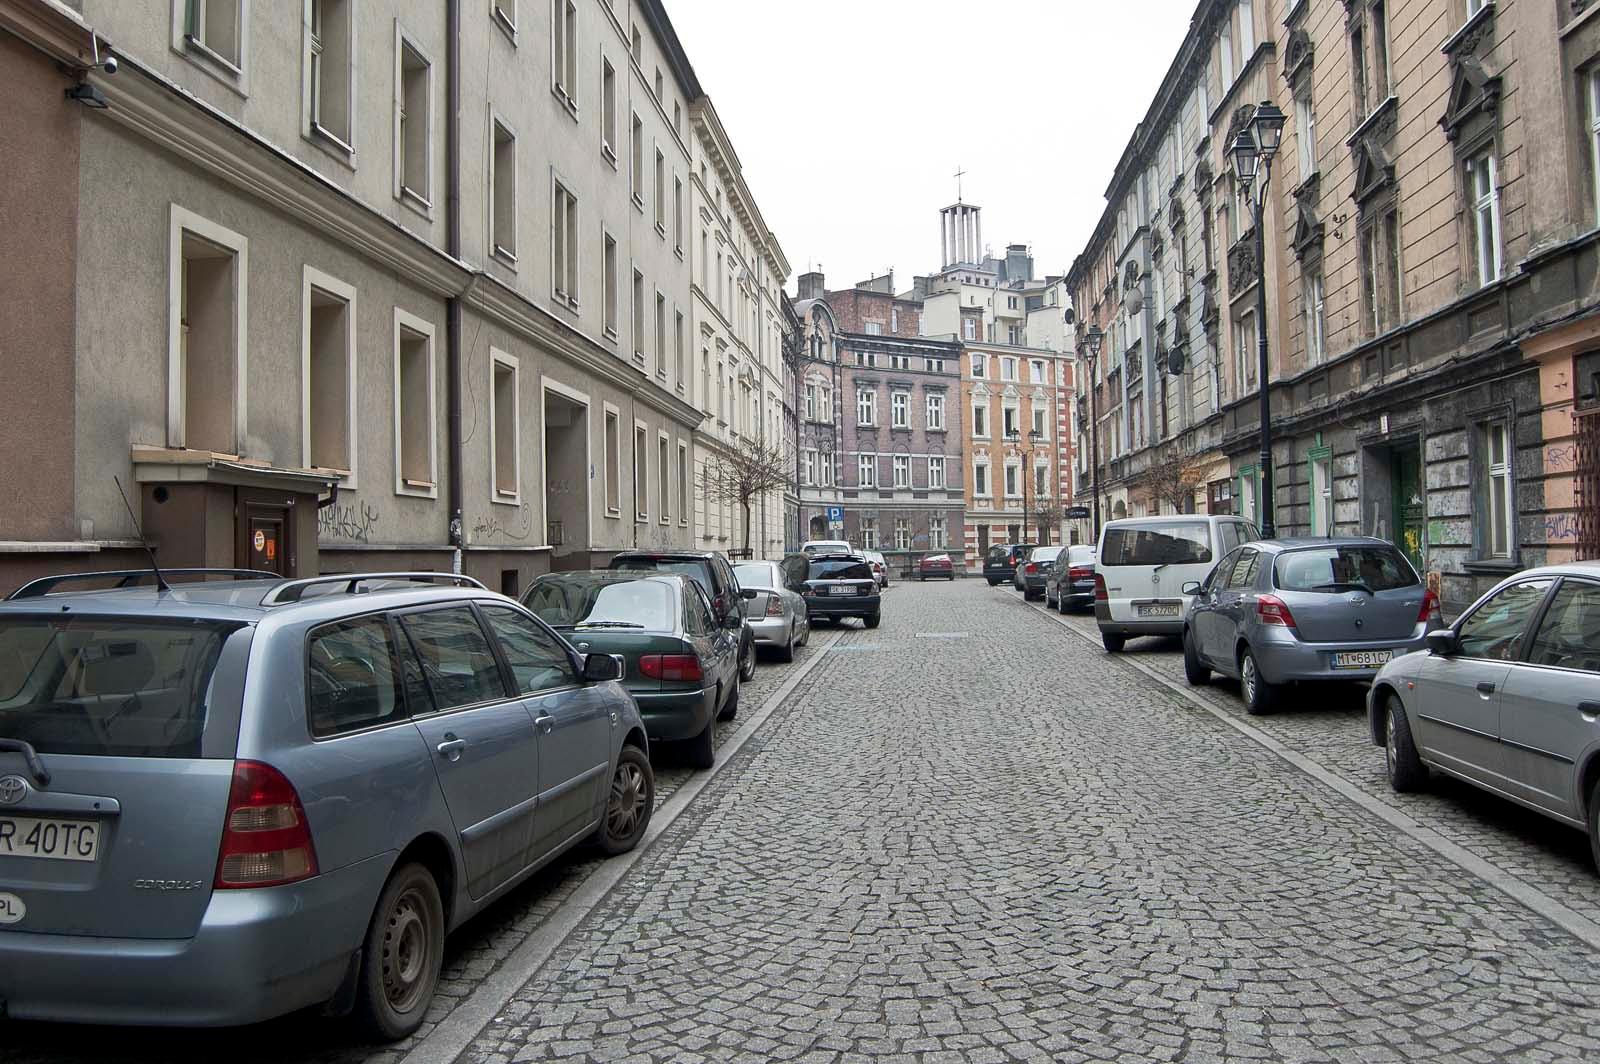 Ulica z kamienicami i autami